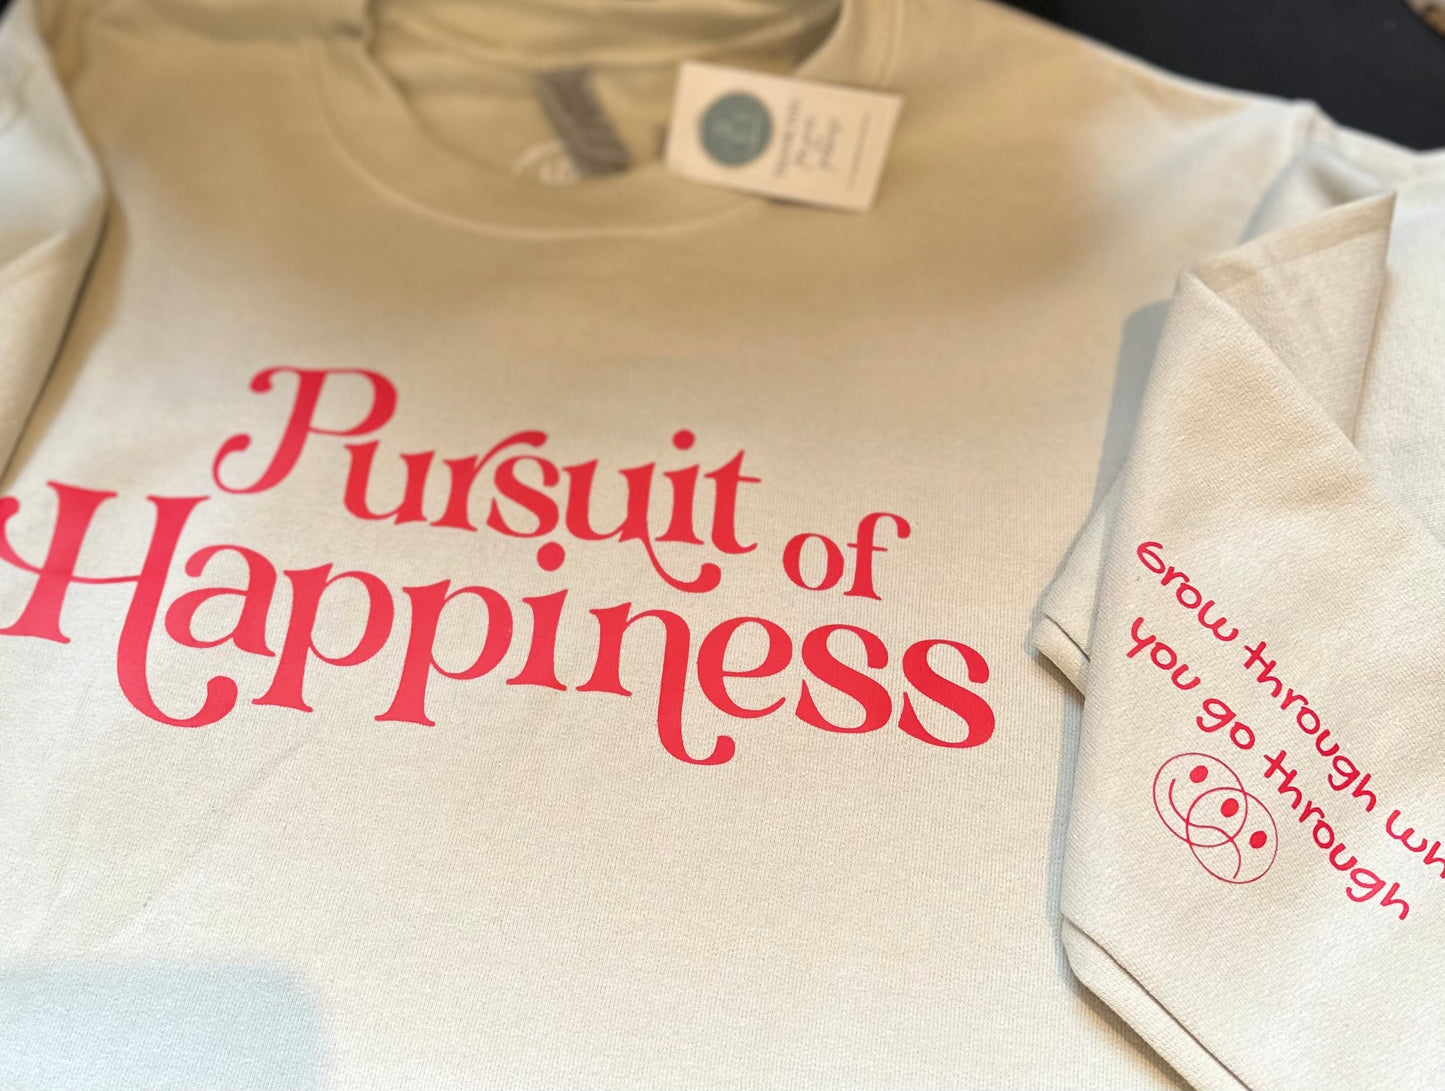 Pursuit of Happiness Crew Sweatshirt